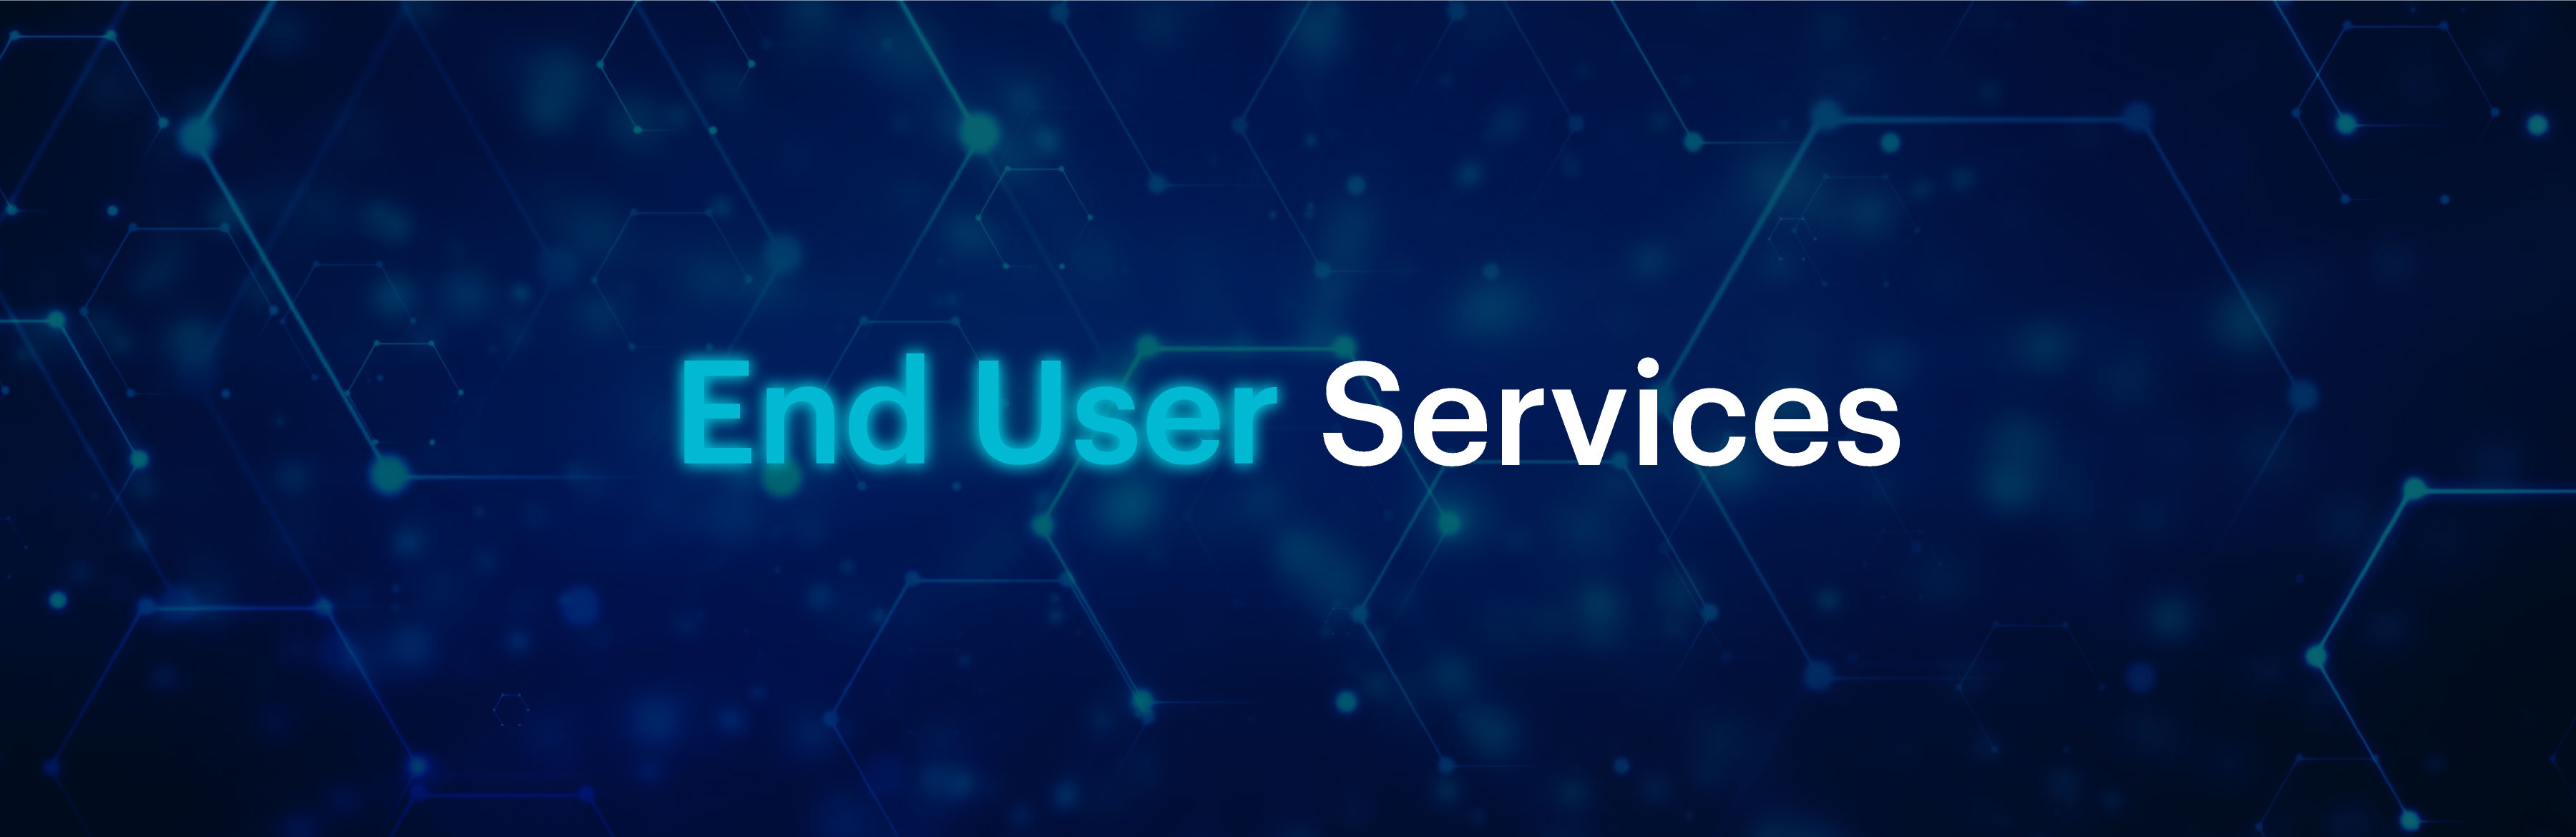 Teaser_End-User_Services